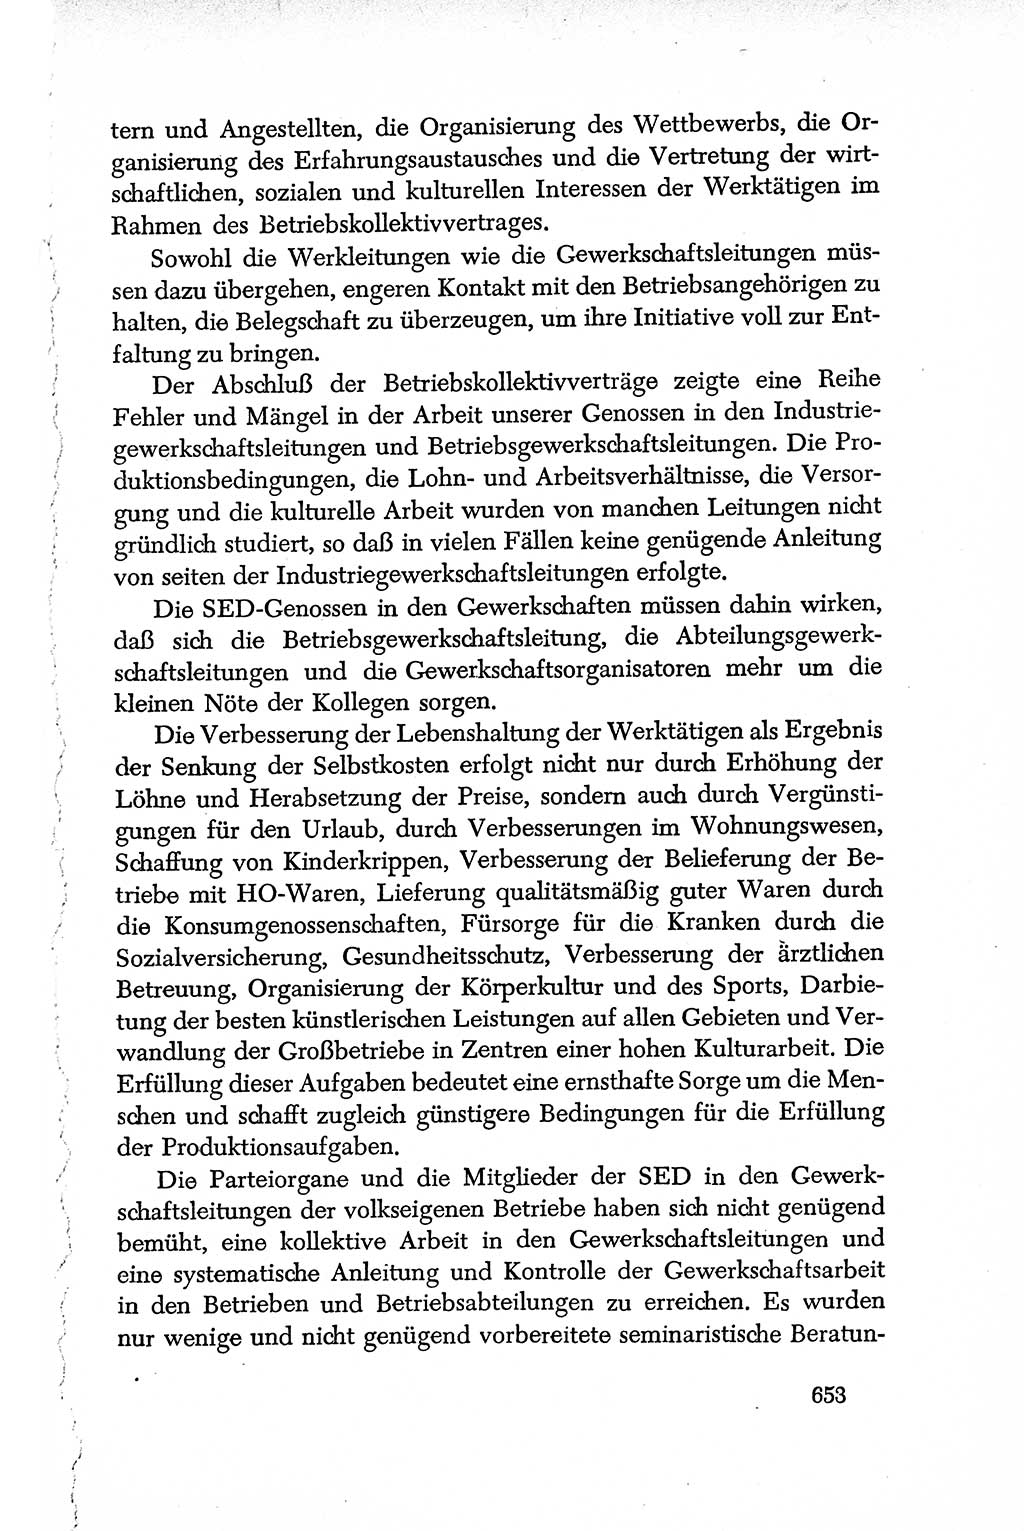 Dokumente der Sozialistischen Einheitspartei Deutschlands (SED) [Deutsche Demokratische Republik (DDR)] 1950-1952, Seite 653 (Dok. SED DDR 1950-1952, S. 653)